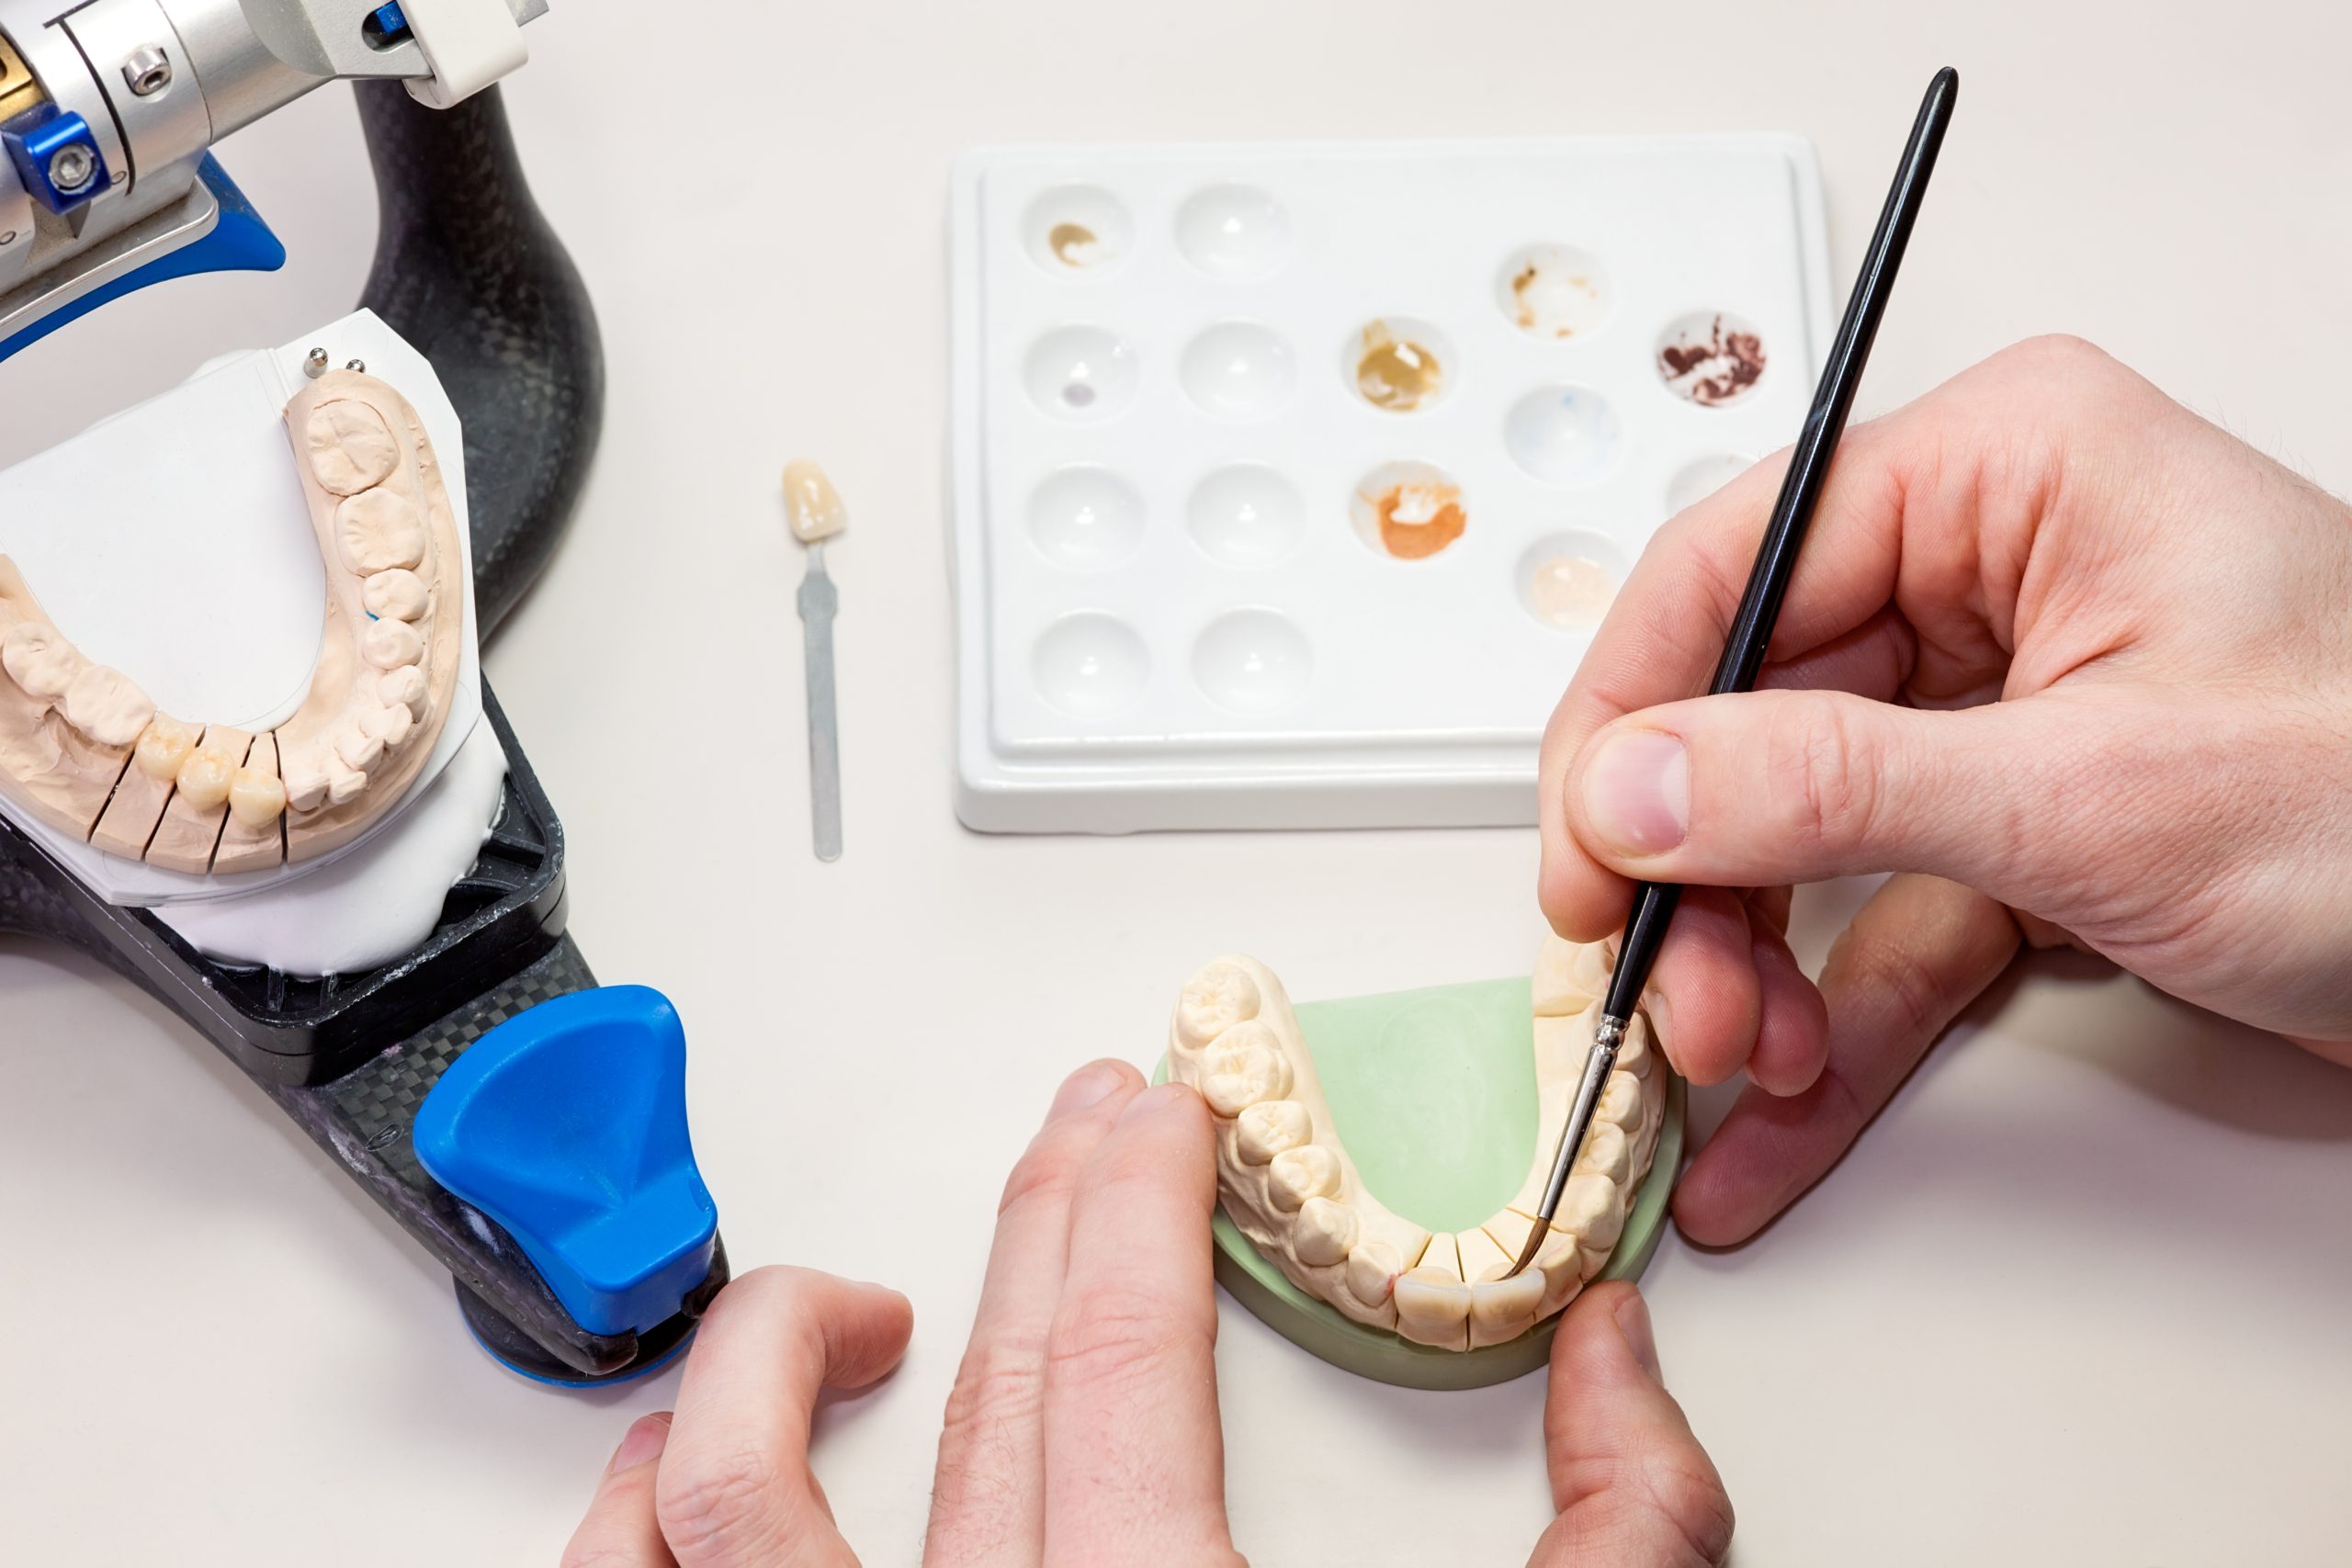 Les étapes de la pose d’une prothèse dentaire fixe sur implant